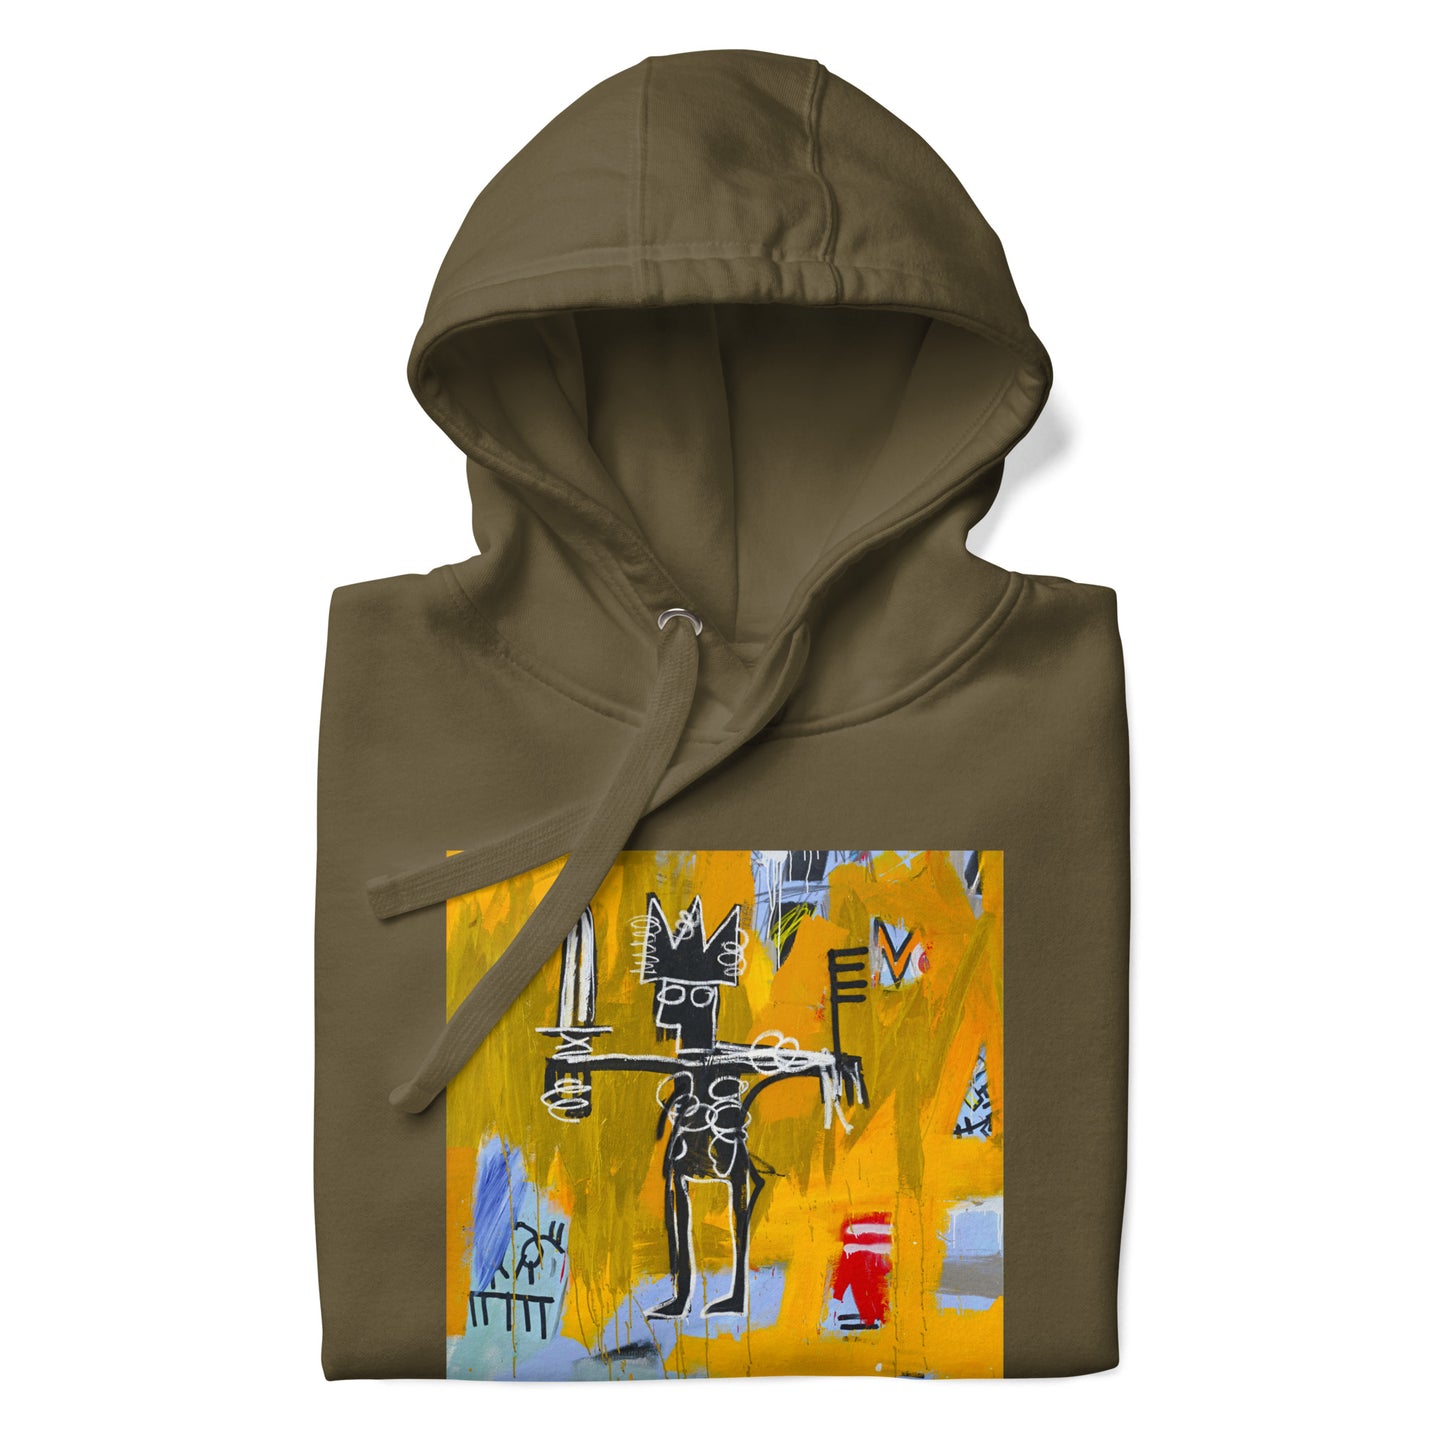 Jean-Michel Basquiat "Julius Caesar on Gold" Artwork Printed Premium Streetwear Sweatshirt Hoodie Olive Green